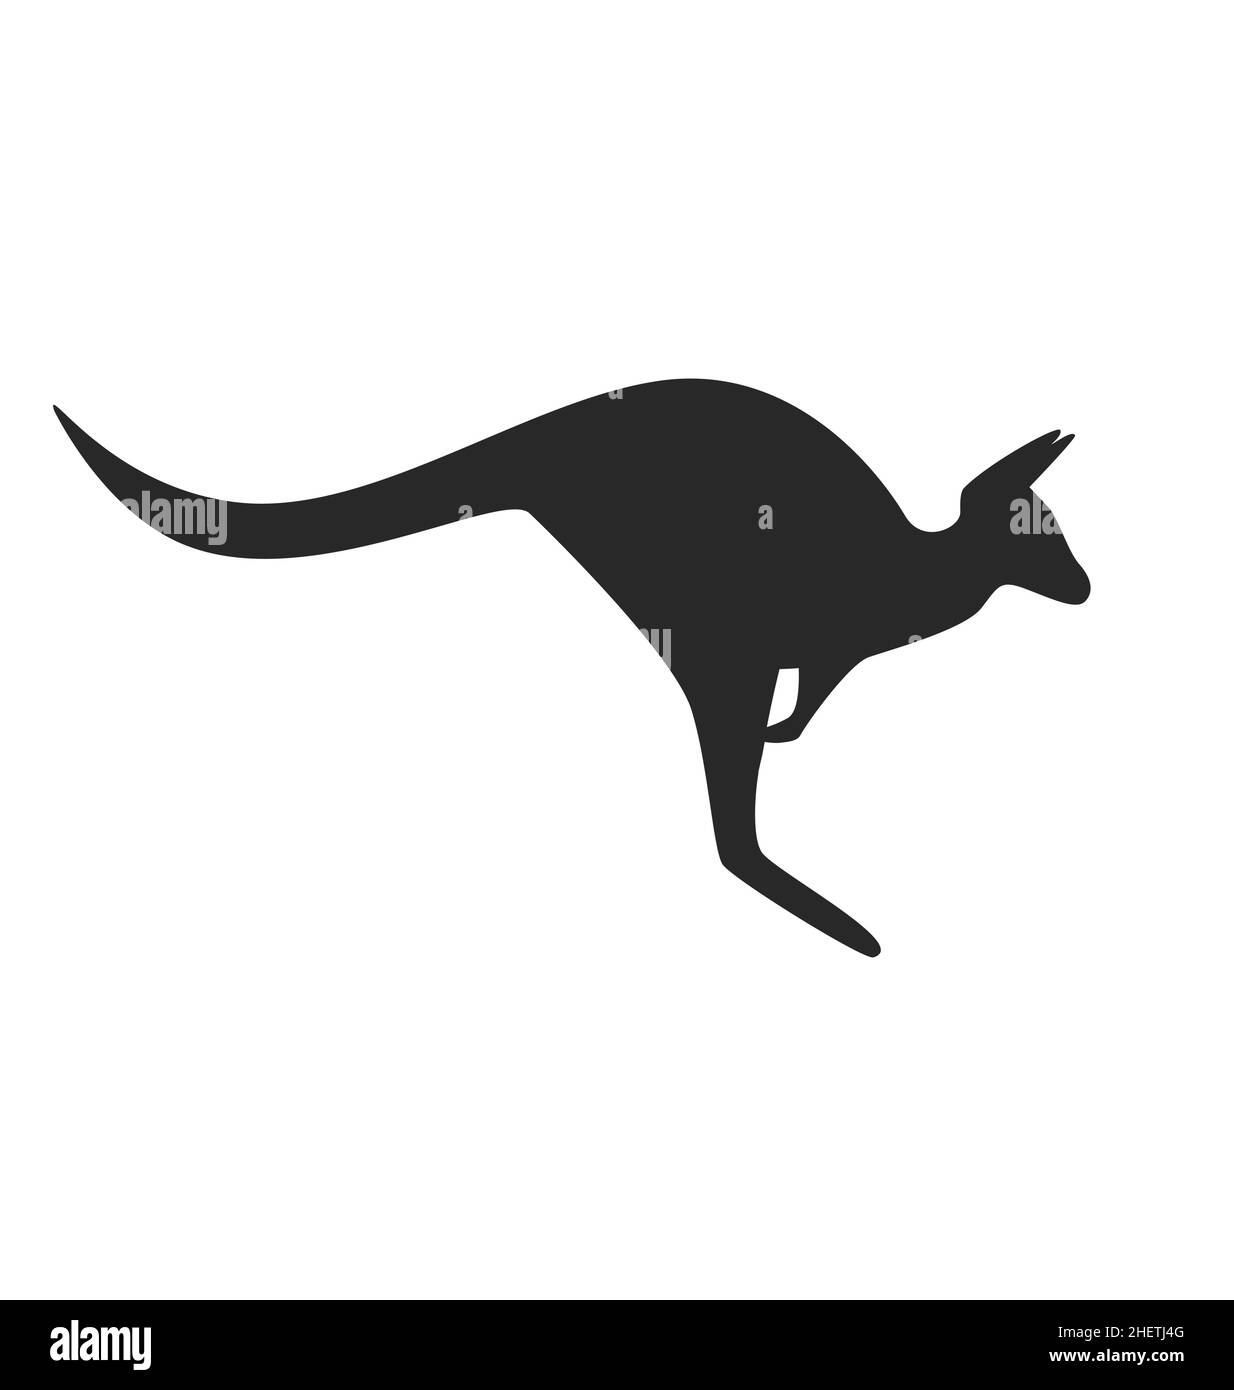 Vereinfachte stilisierte stilisierte Känguru Silhouette Seitenansicht Umriss Vektor isoliert auf weißem Hintergrund Stock Vektor